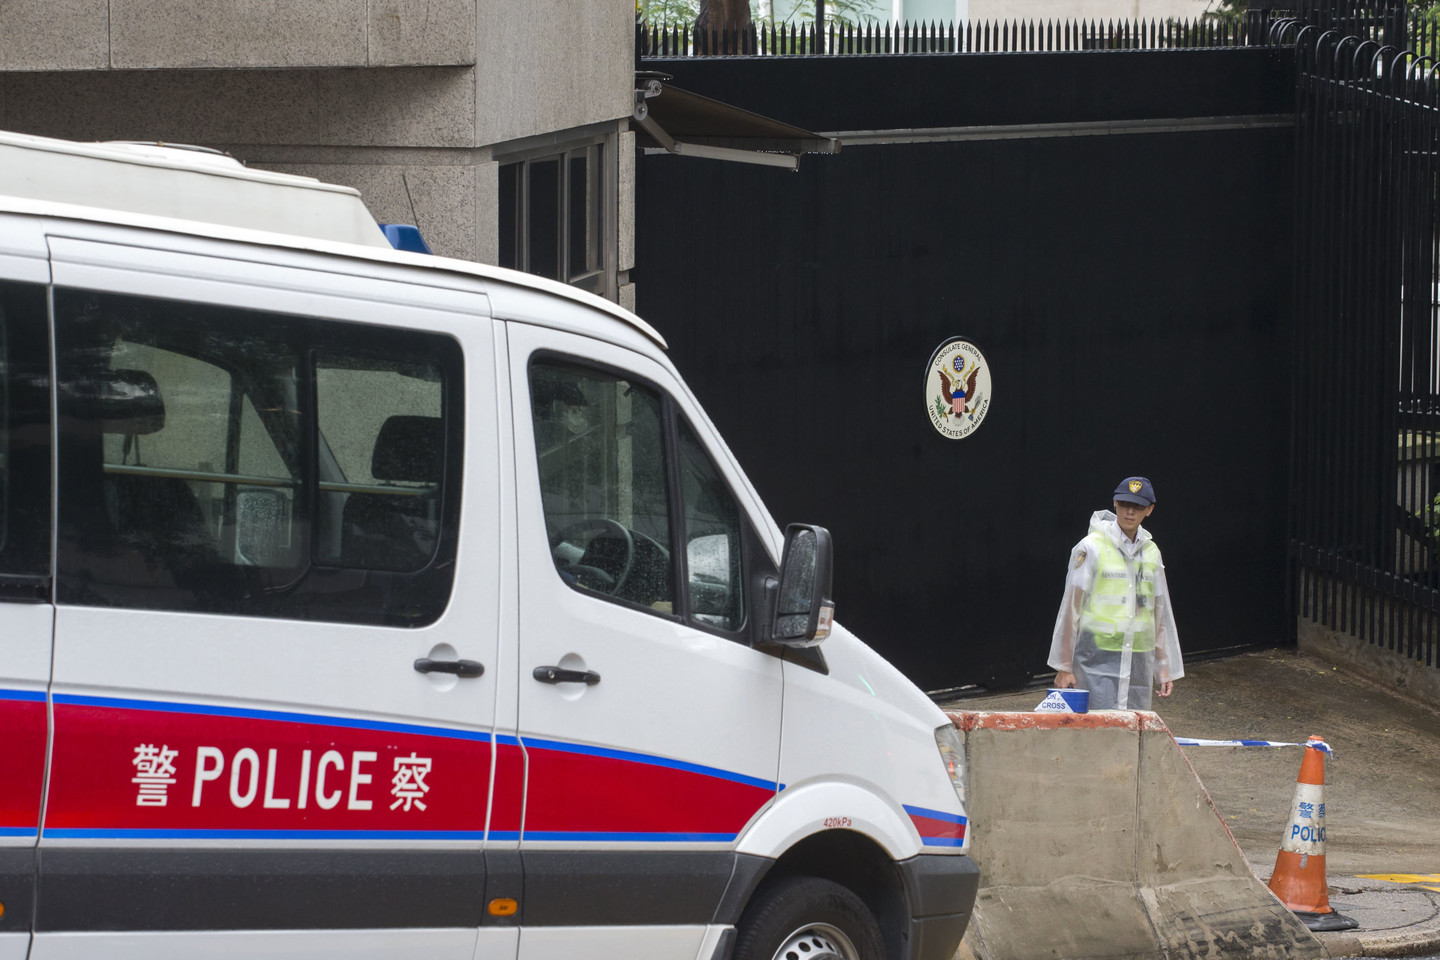  Dėl incidento konsulate buvo atšaukti visi pokalbiai dėl vizų, o prie pastato eilėje lūkuriuojantiems žmonėms buvo nurodyta nedelsiant išsiskirstyti.<br> AFP/„Scanpix“ nuotr. 